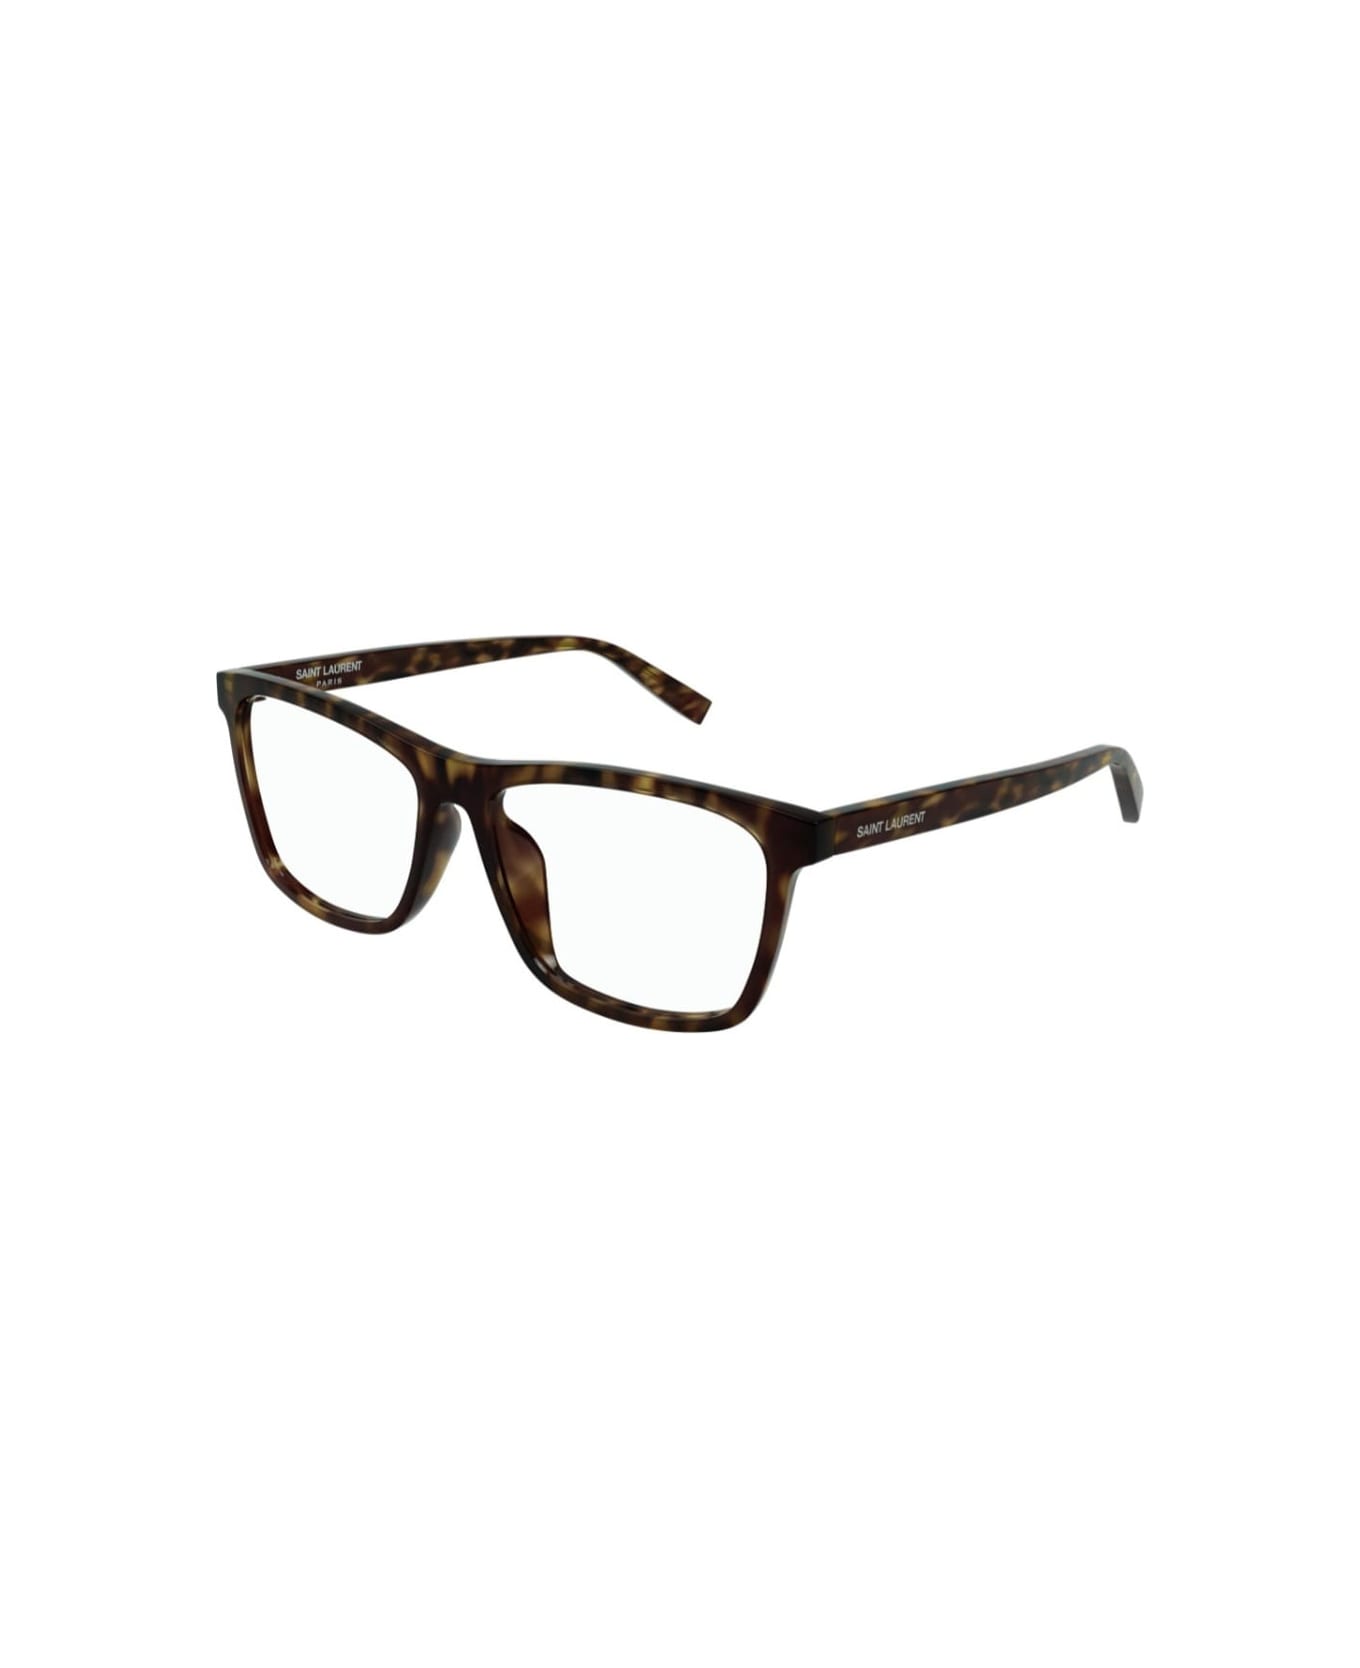 Saint Laurent Eyewear sl 505 002 Glasses - Tortoise